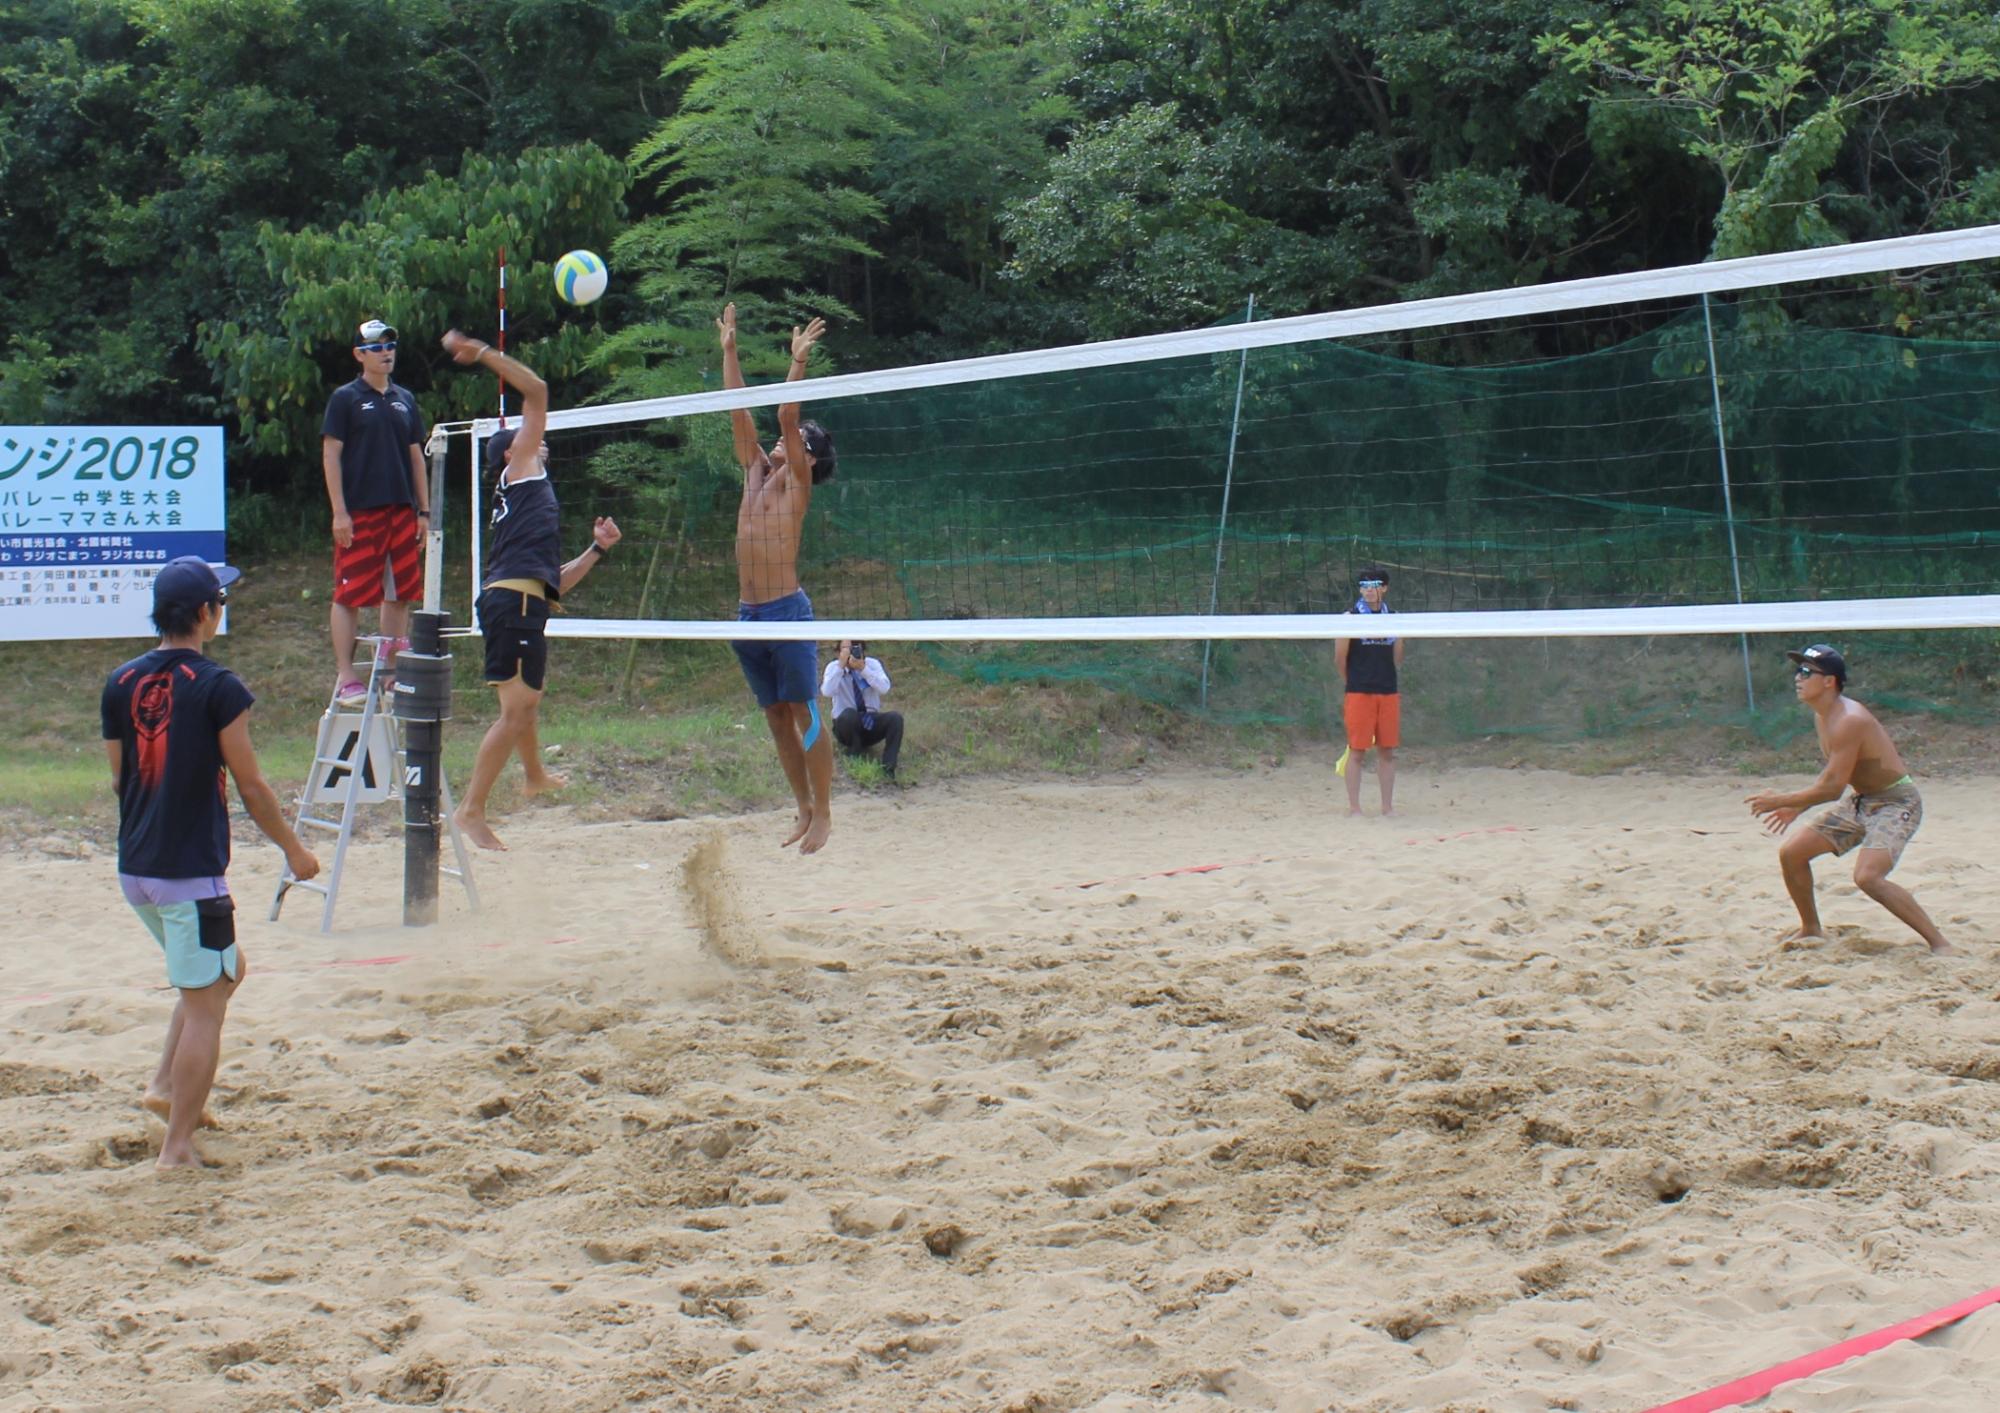 砂上で熱い戦いを繰り広げる選手